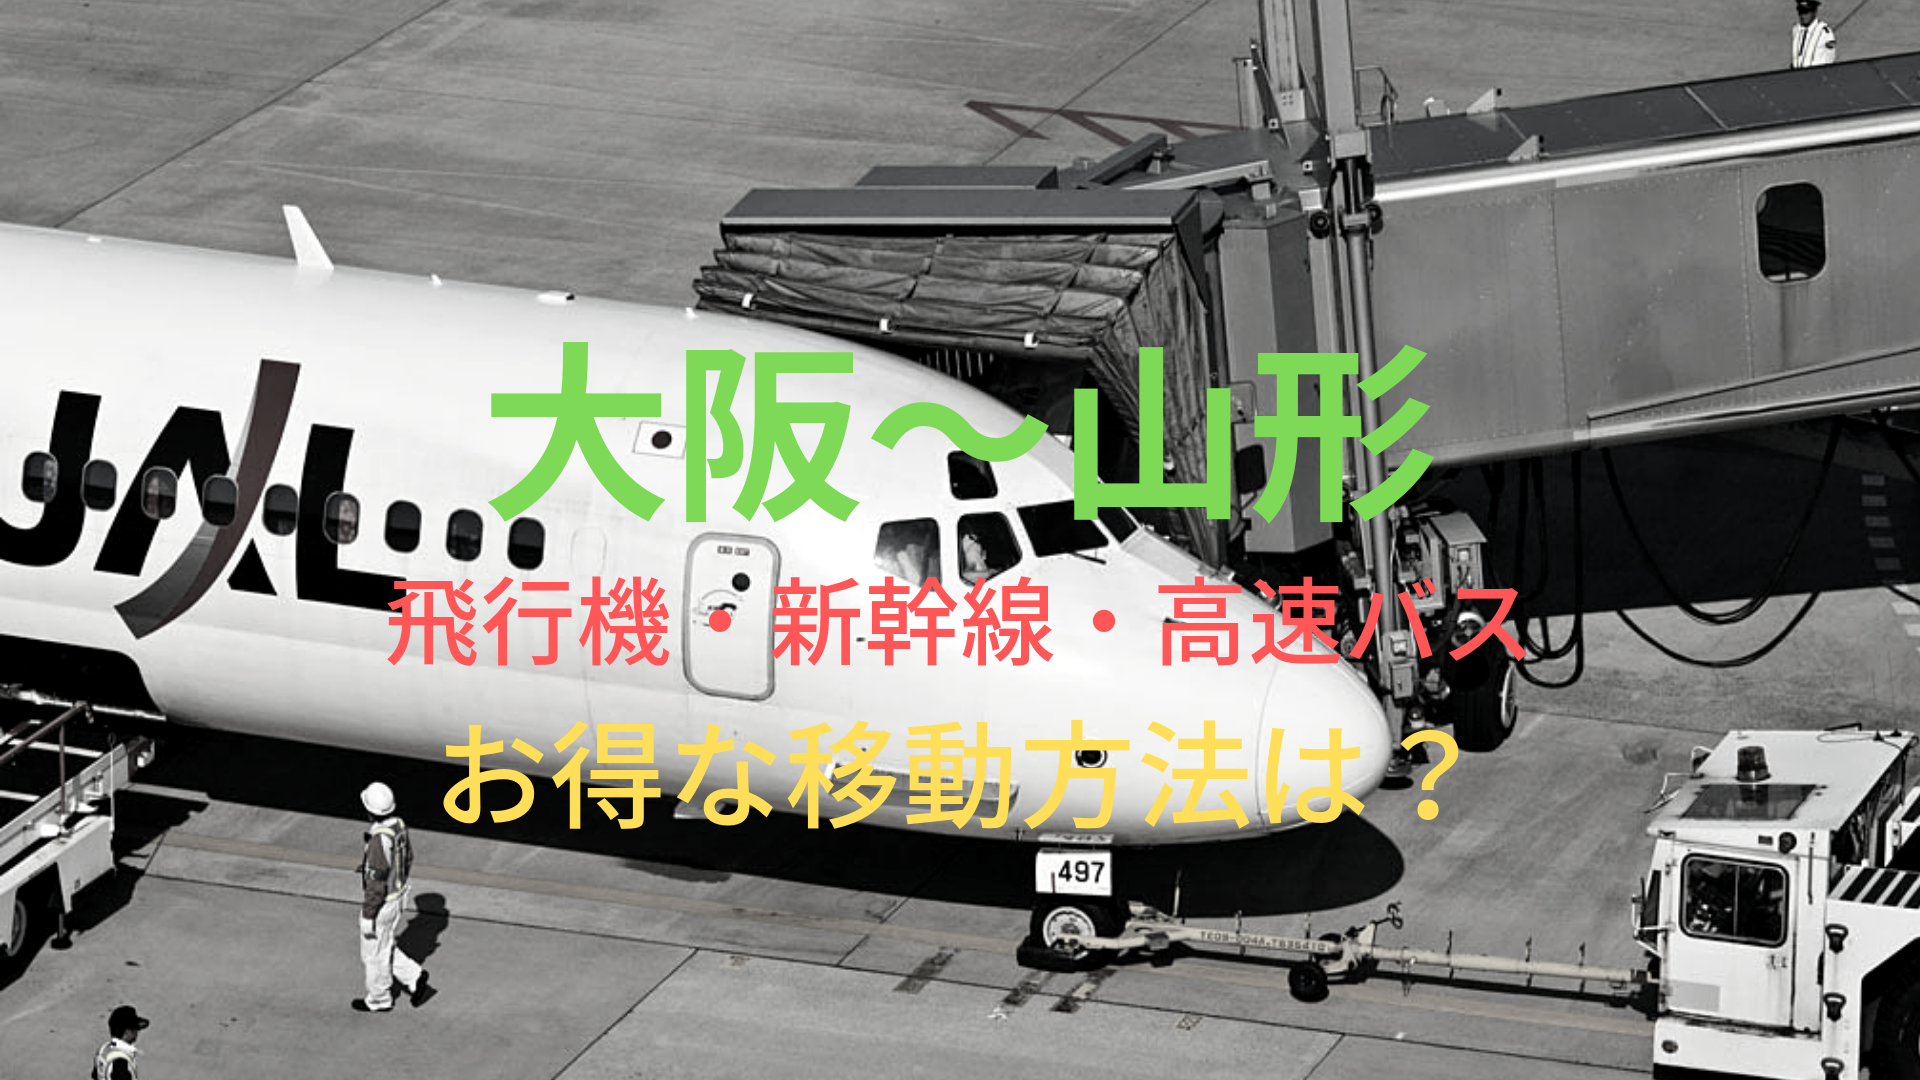 大阪 山形 9160円 格安で移動する方法は 飛行機 新幹線 高速バスをそれぞれ比較 ばしたく交通